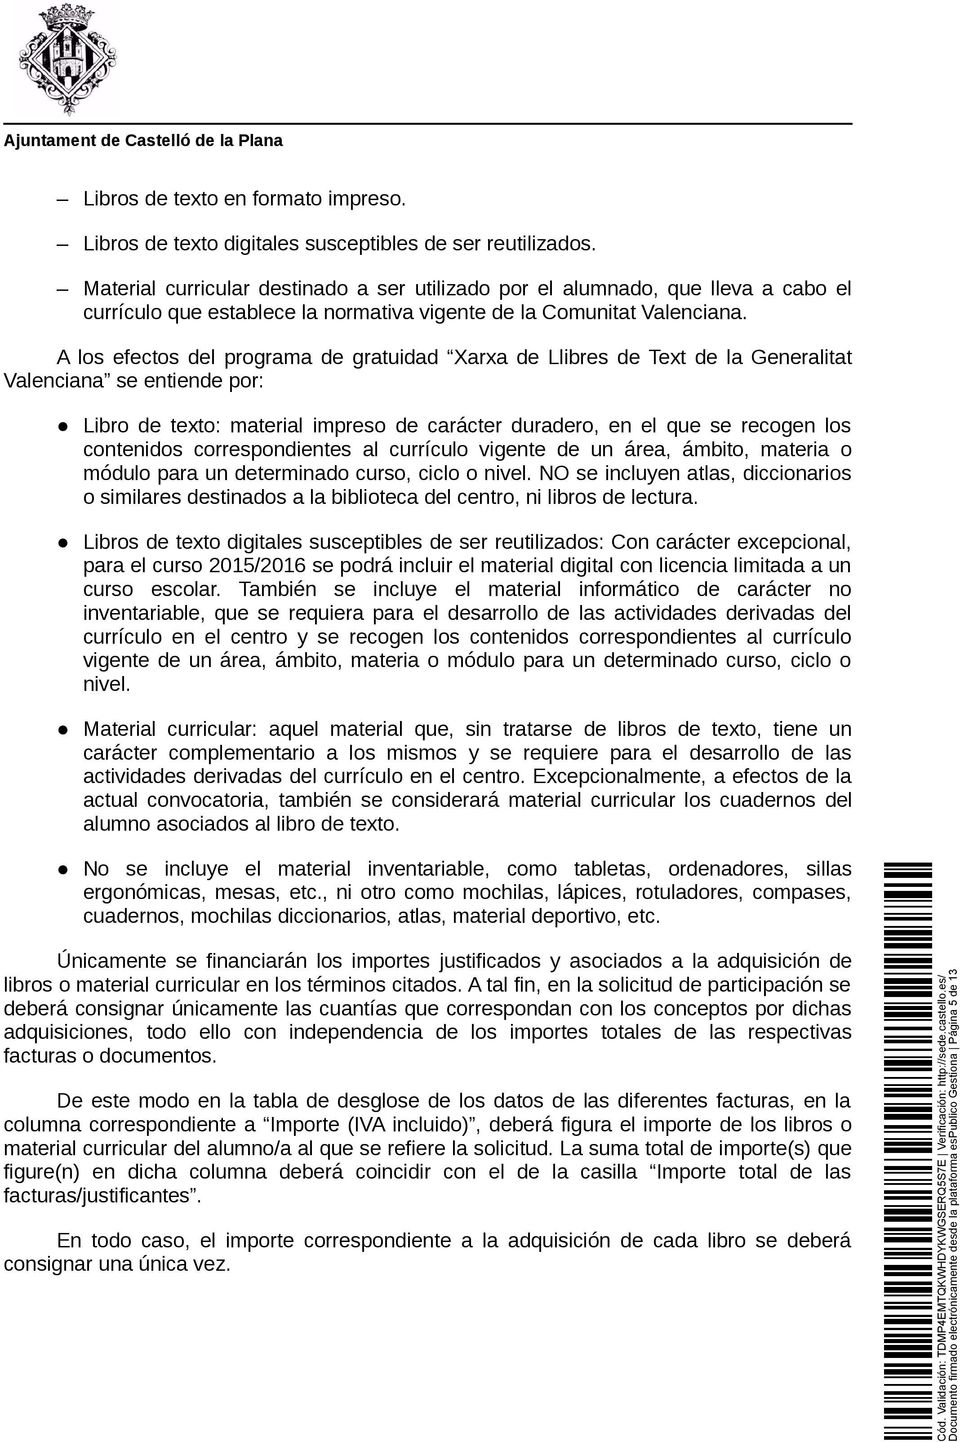 A los efectos del programa de gratuidad Xarxa de Llibres de Text de la Generalitat Valenciana se entiende por: Libro de texto: material impreso de carácter duradero, en el que se recogen los